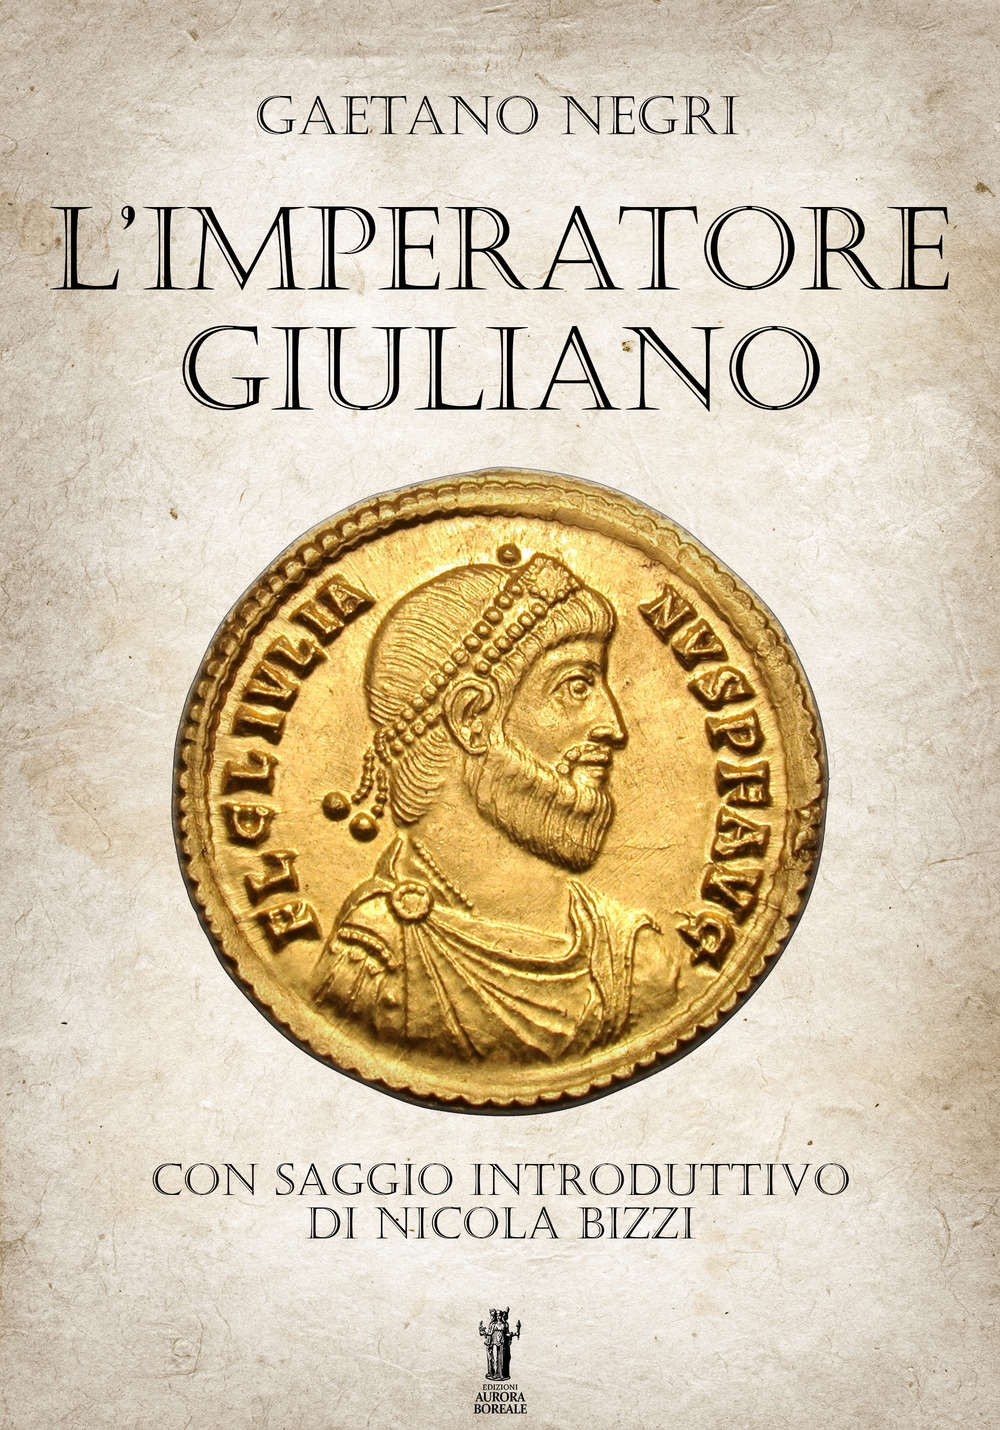 Libri Negri Gaetano - L' Imperatore Giuliano NUOVO SIGILLATO, EDIZIONE DEL 25/01/2020 SUBITO DISPONIBILE